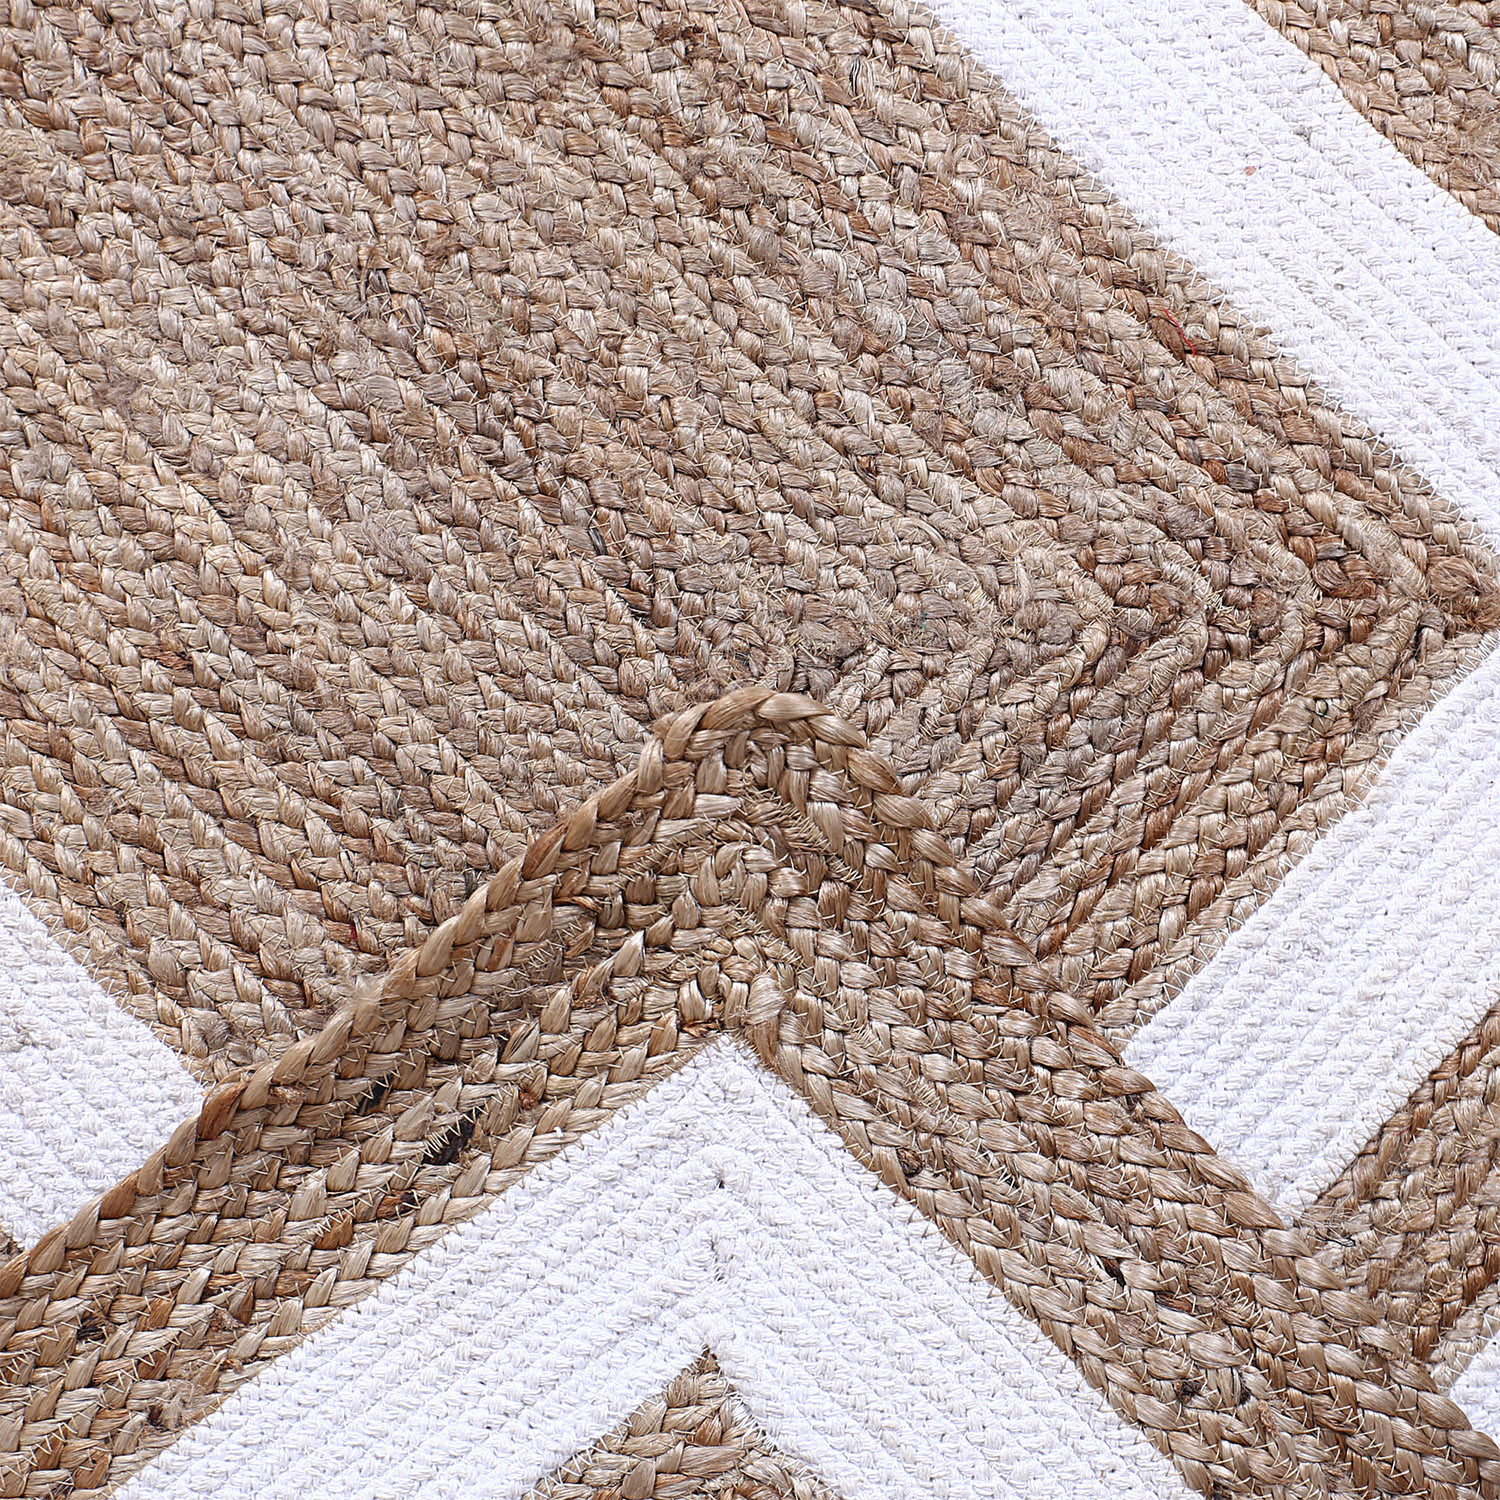 Kuber Industries Hand Woven Carpet|Jute Rectangular Shape Centre Table Dhurrie|Striped Floor Door Mat For Furnish Living Room,Bedroom,5x3 Feet,(White)